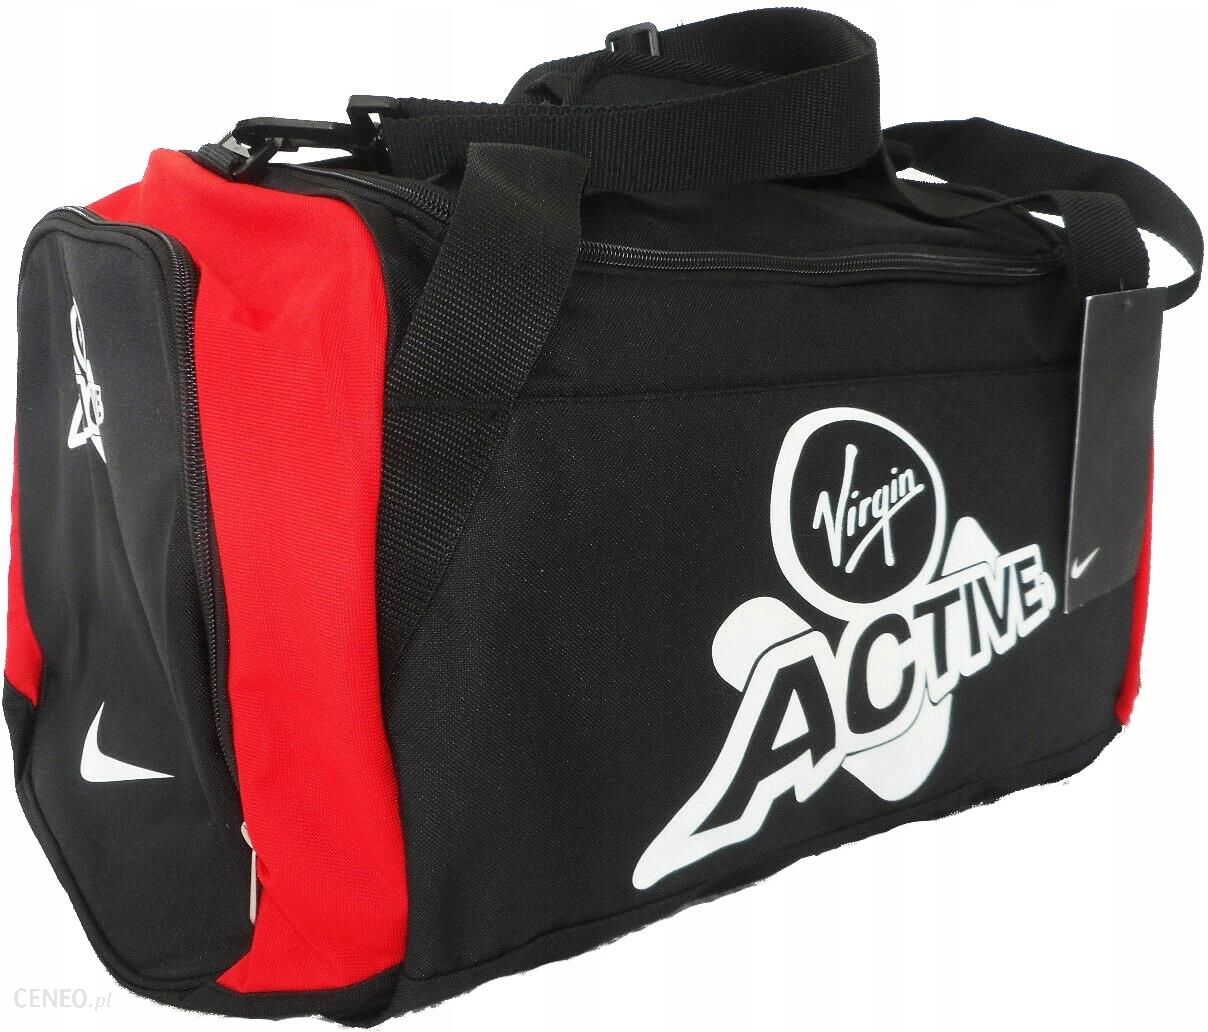 Торба найк. Спортивная сумка найк. Спортивный чемодан найк. Nike Urban сумка.